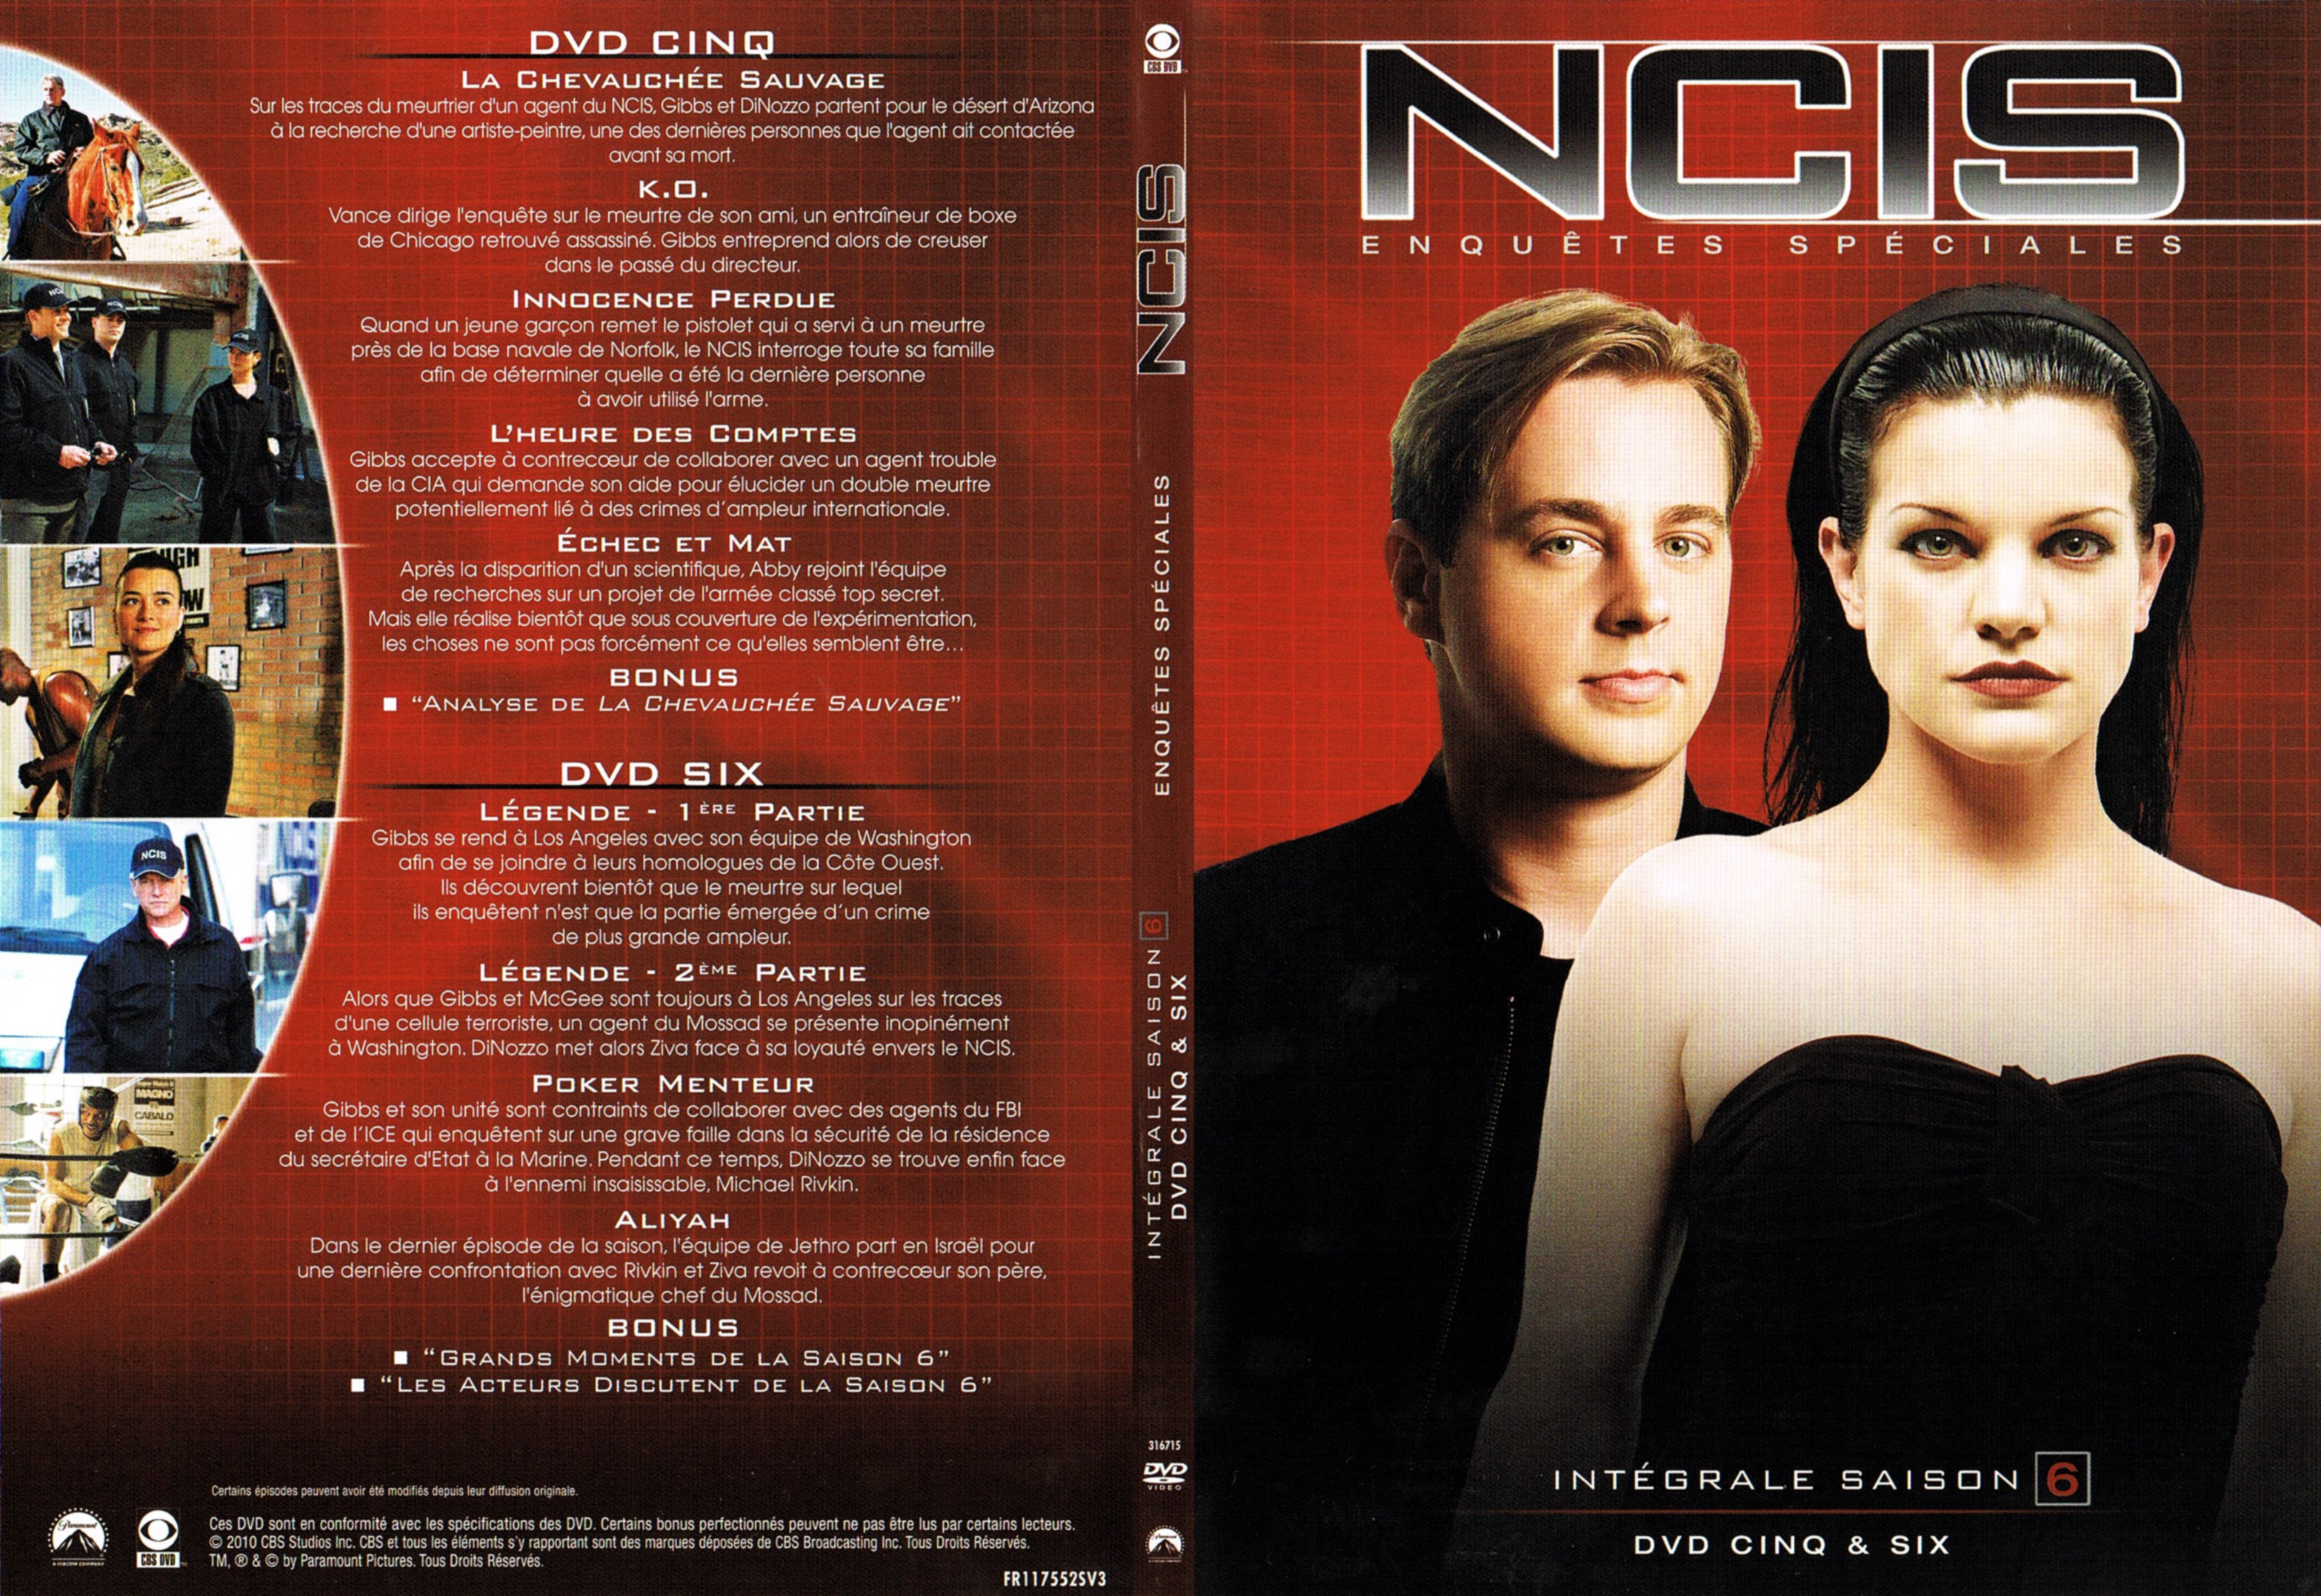 Jaquette DVD NCIS Saison 6 DVD 3